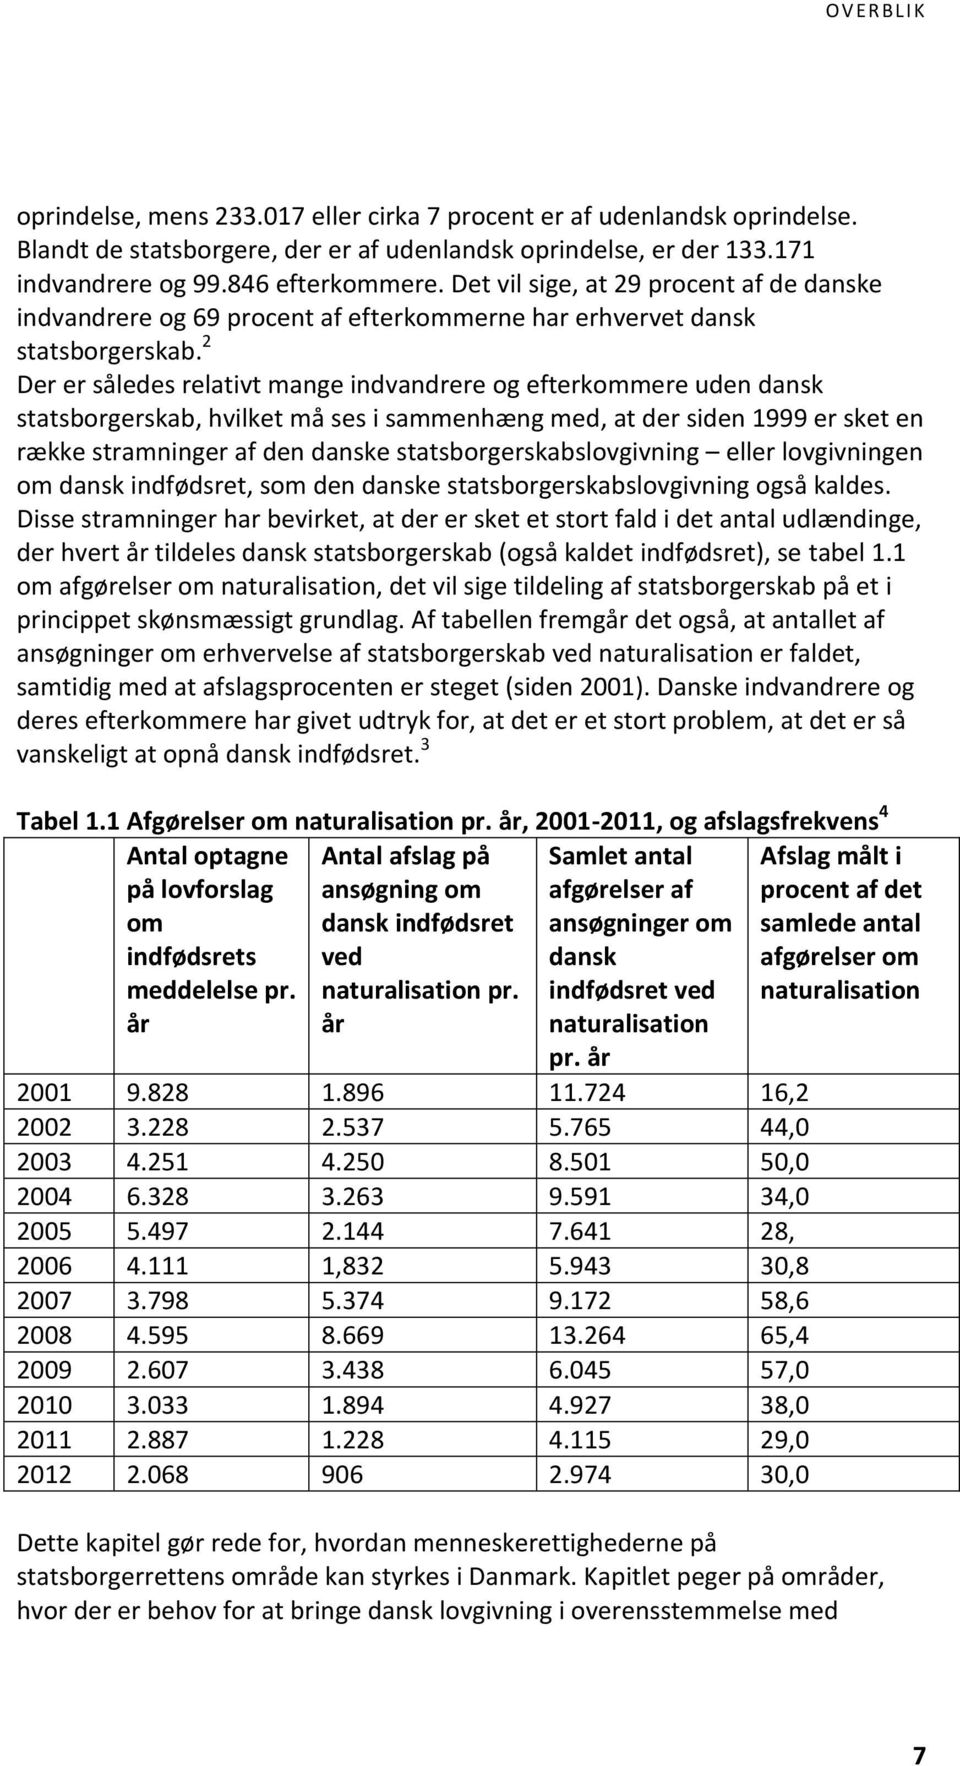 2 Der er således relativt mange indvandrere og efterkommere uden dansk statsborgerskab, hvilket må ses i sammenhæng med, at der siden 1999 er sket en række stramninger af den danske